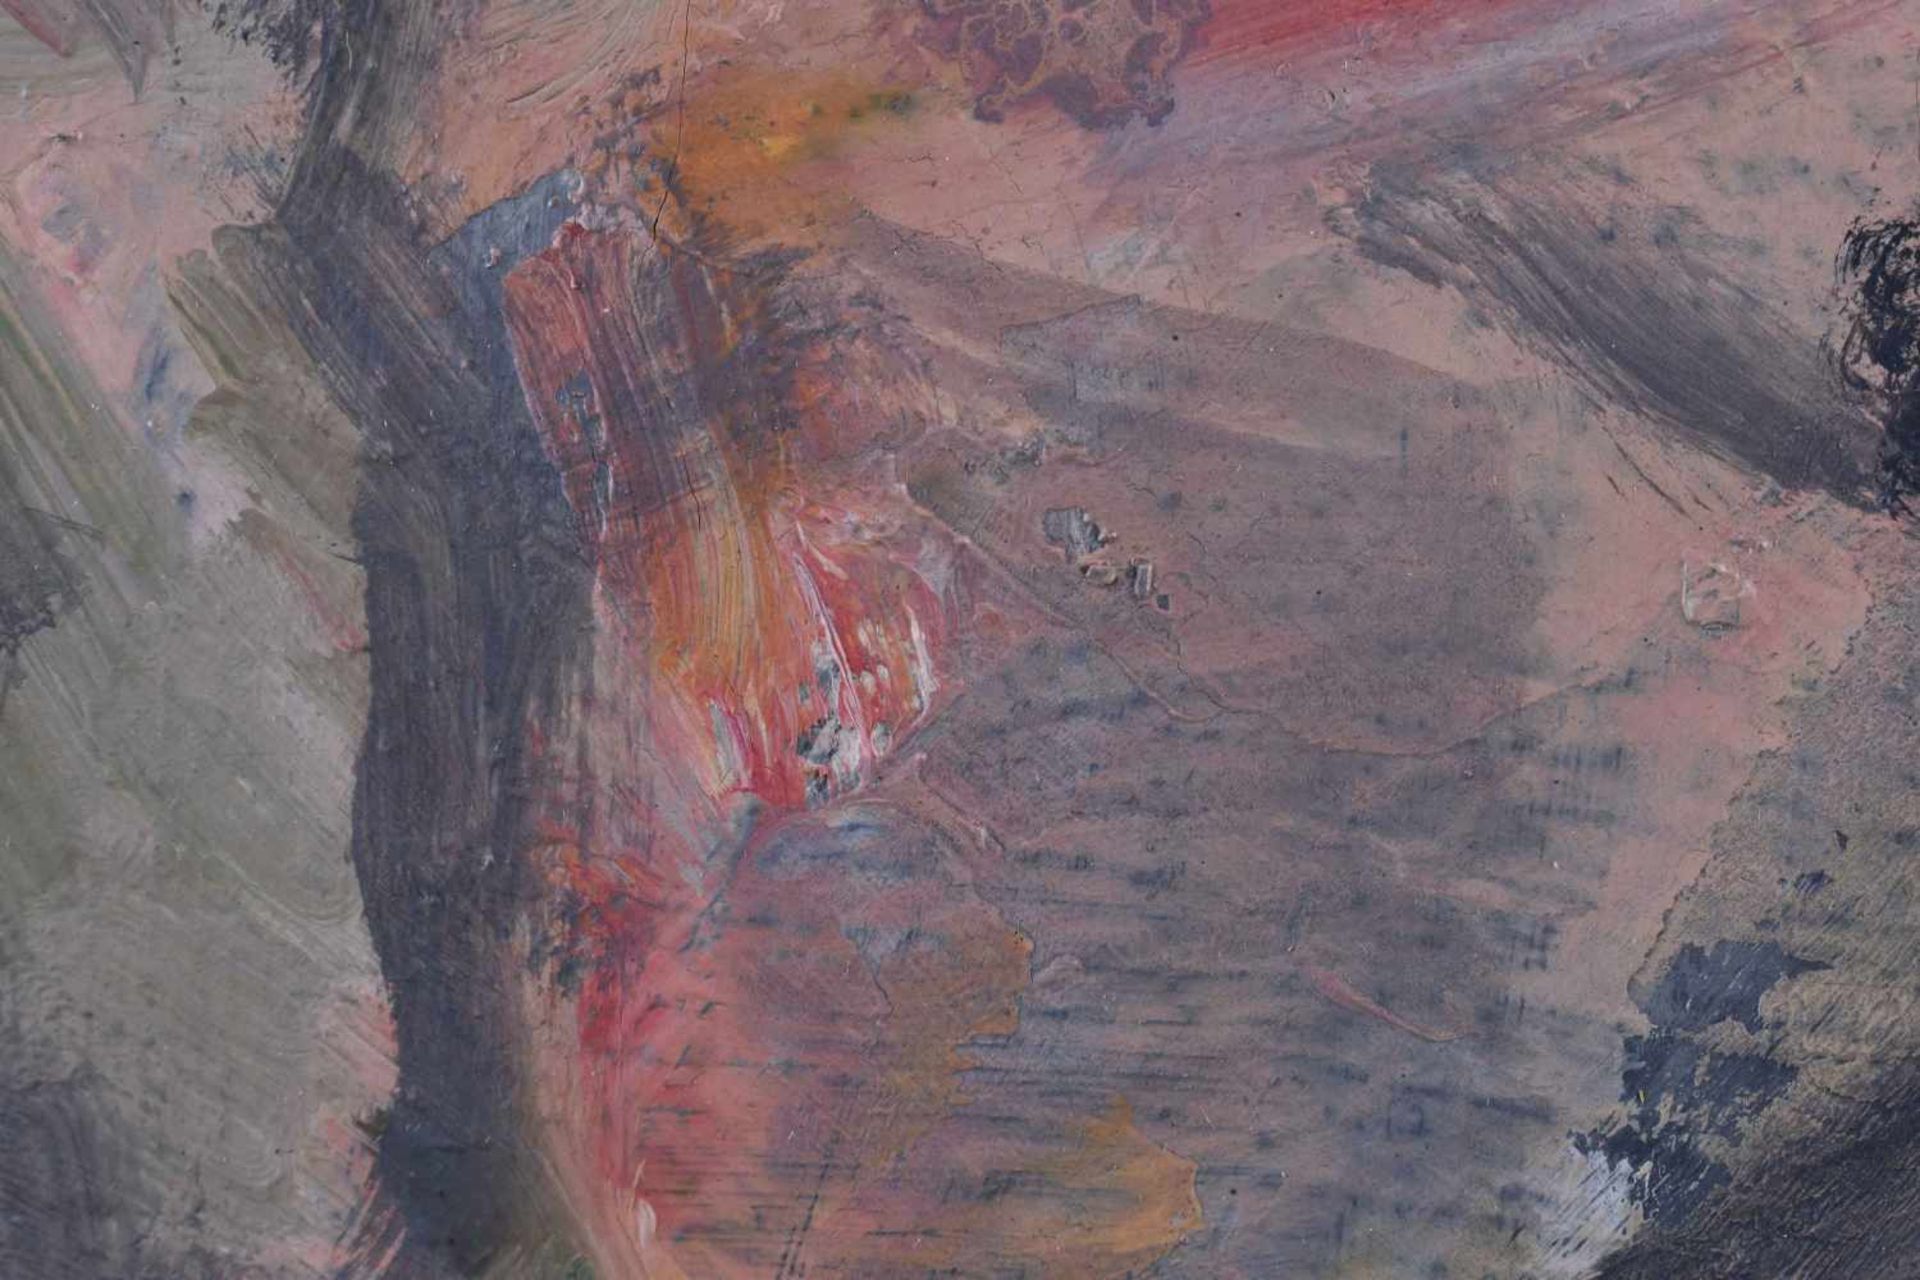 Hans VENT (1934-2018)"Paar"painting oil / canvas, 29.5 cm x 24 cm, with frame, 43.5 cm x 27.5 cm, - Image 4 of 6